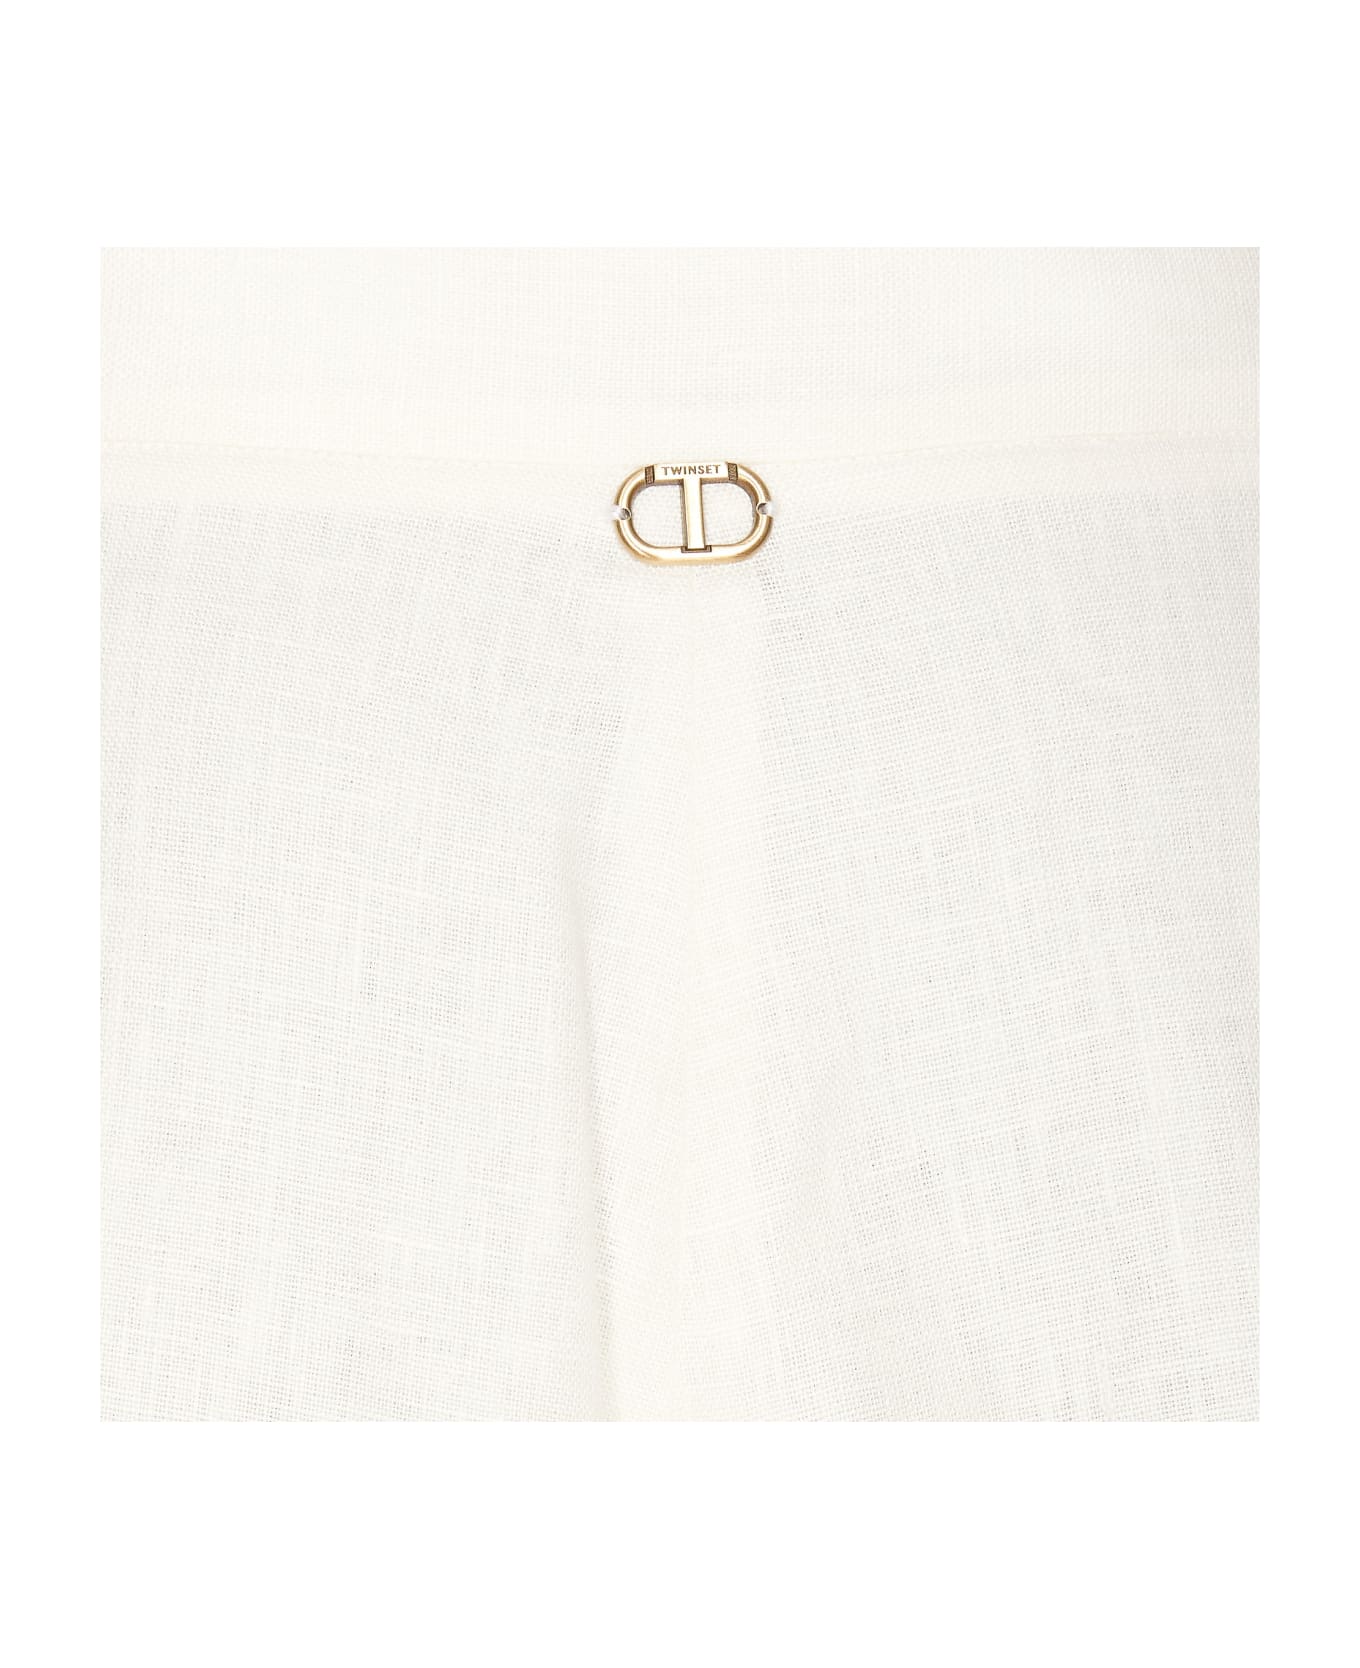 TwinSet Shorts - WHITE/PINK ショートパンツ